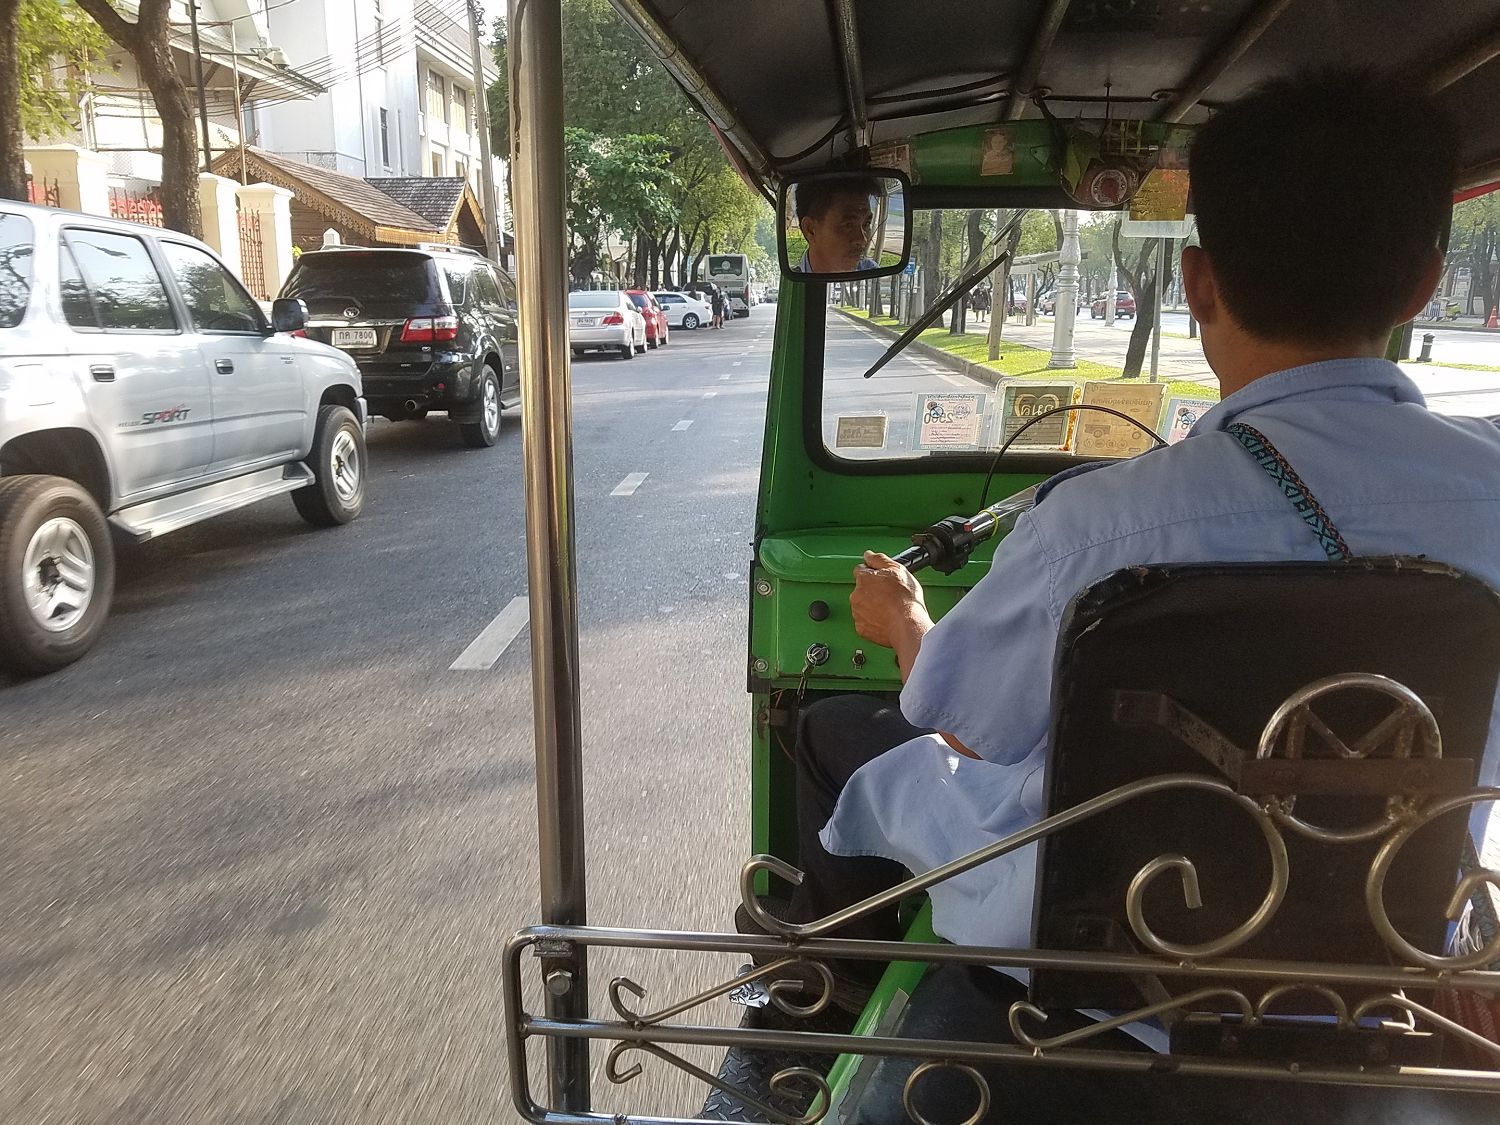 Első tuk-tuk utazásunk. 60 baht-ért körbevitt minket az egész városon és meg is várta, amíg egy helyen nézelődtünk. Ezerrel cikázott a kocsik között, a menetszél kellemesen hűsít